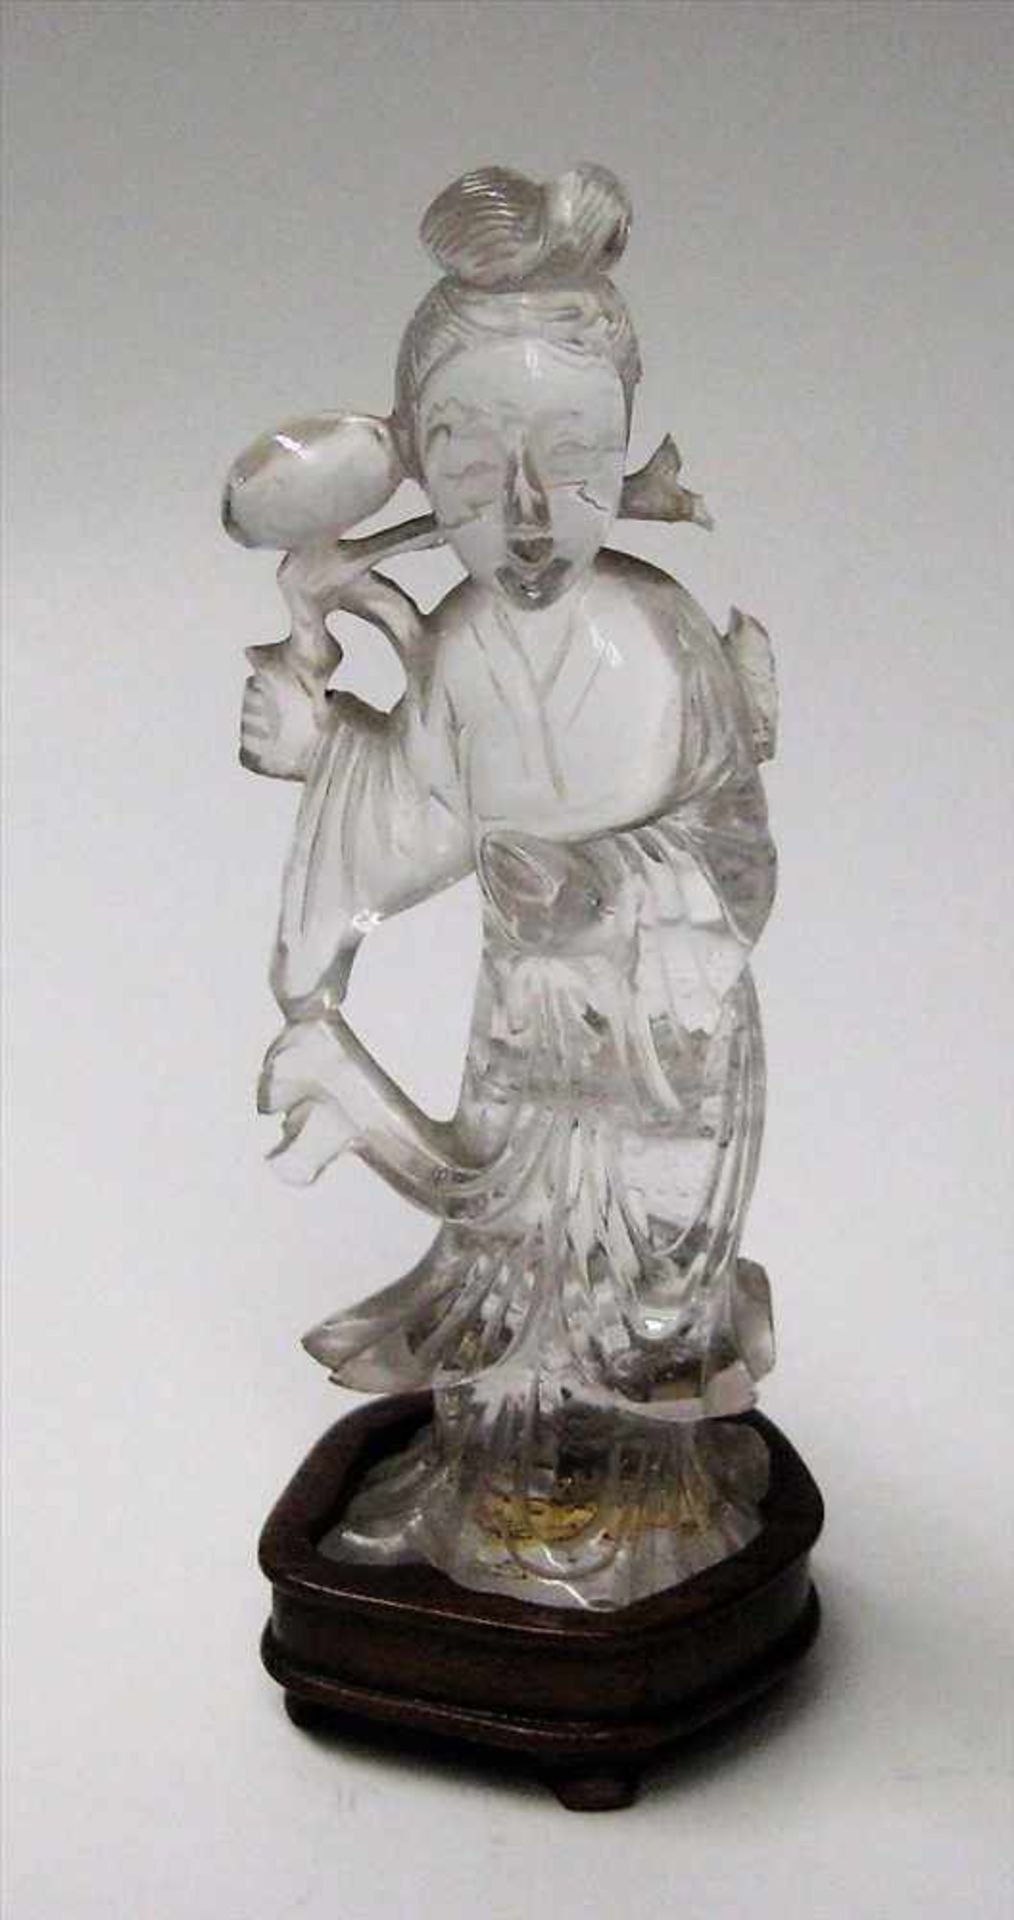 Stehende Geisha, Japan, Bergkristall fein beschnitzt, Holzsockel, 1 x besch., h 11,5 cm, d 4 cm.